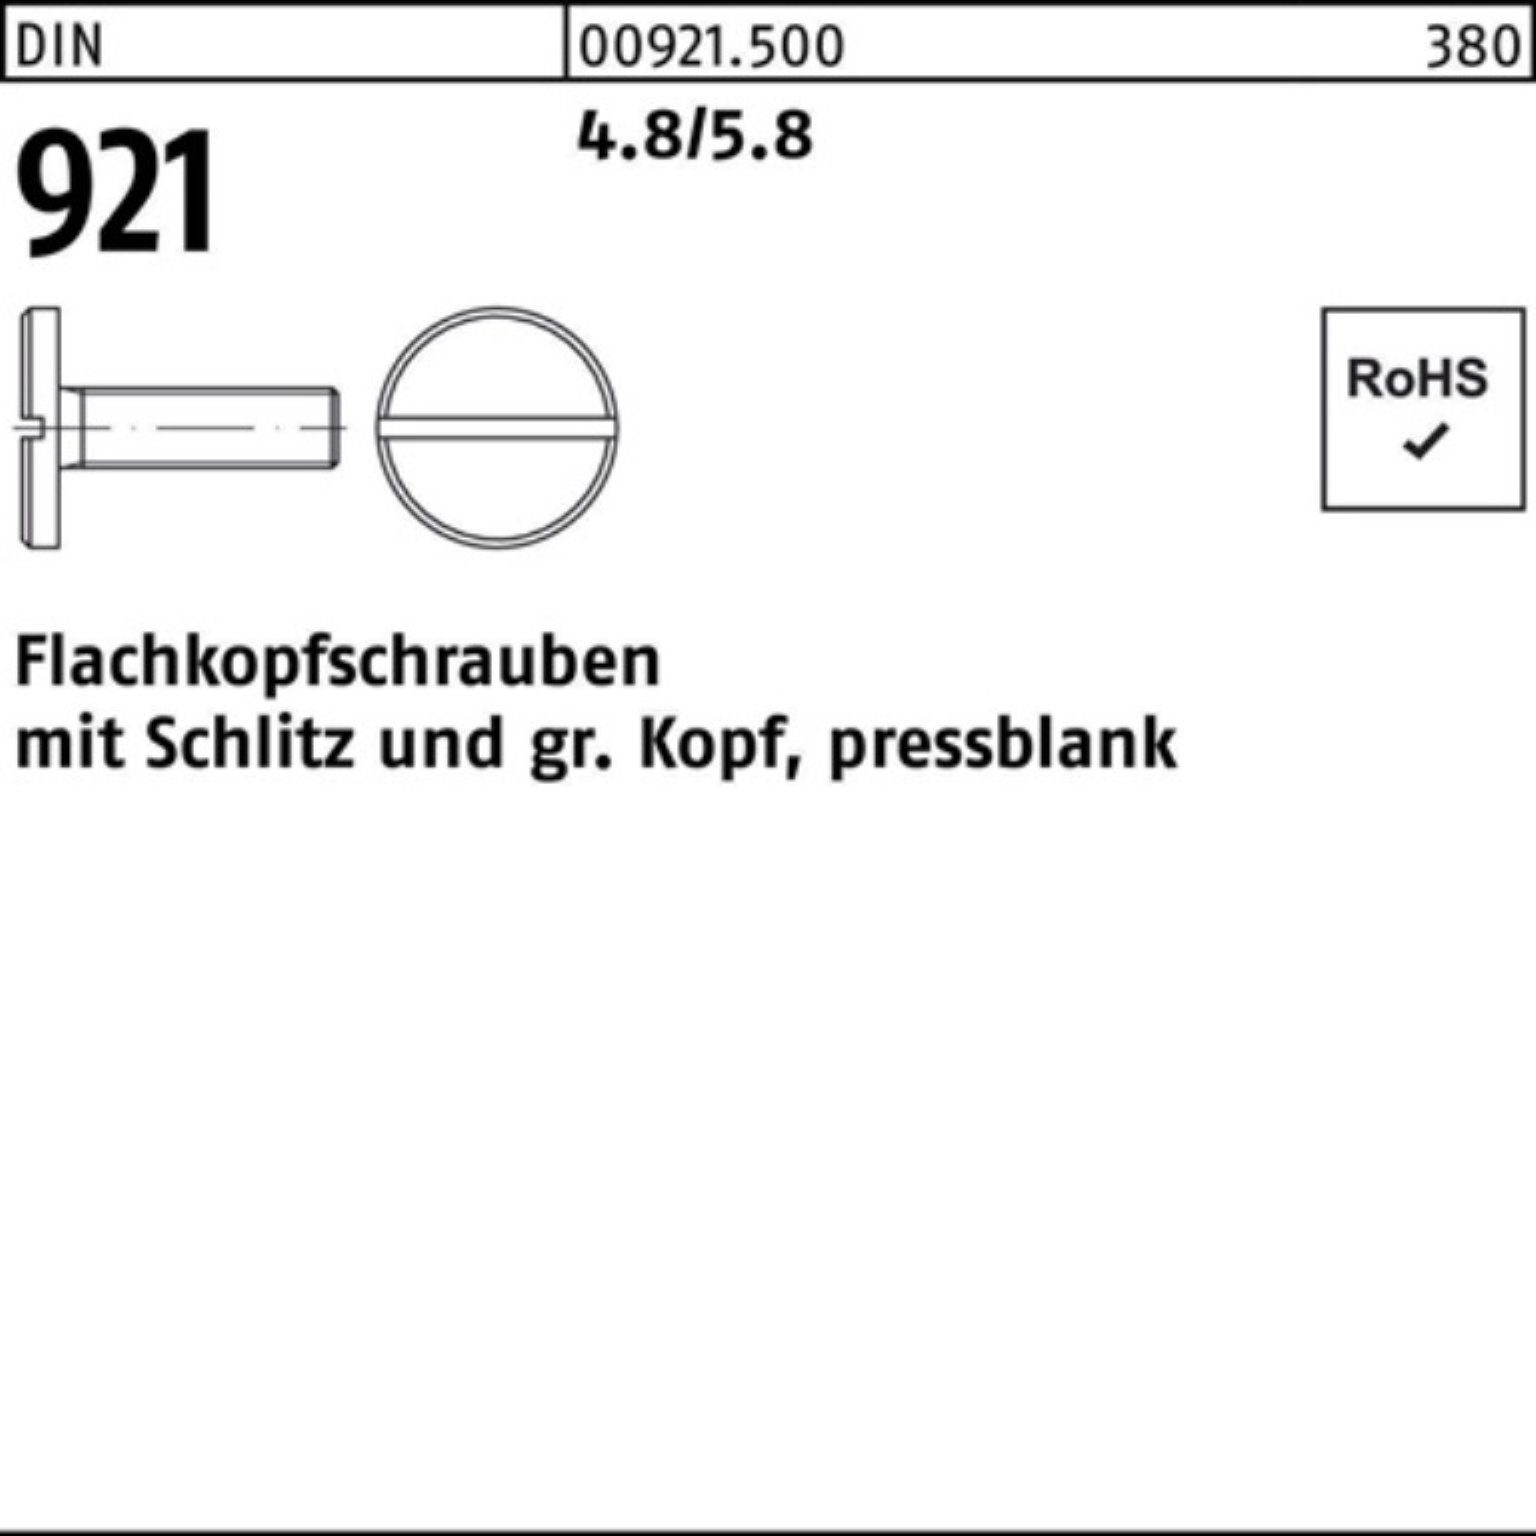 Reyher Schraube 100er Pack Flachkopfschraube DIN 921 Schlitz M6x 20 4.8/5.8 100 Stück